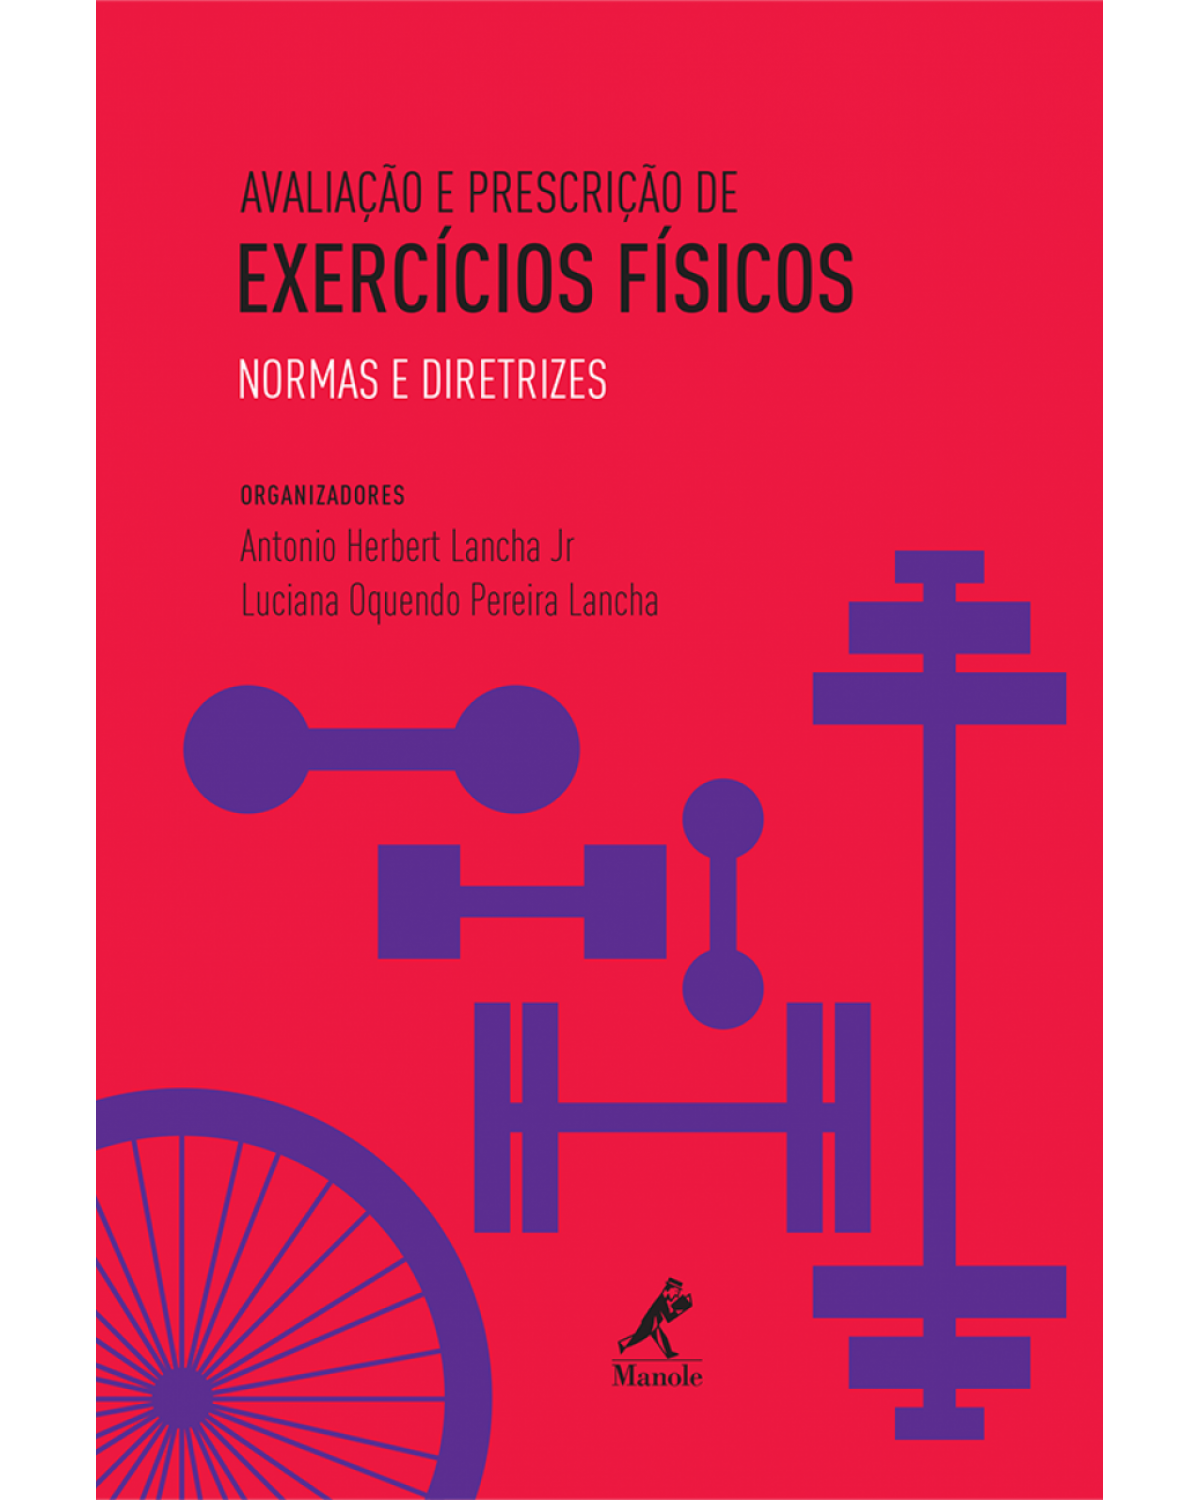 Avaliação e prescrição de exercícios físicos - Normas e diretrizes - 1ª Edição | 2016